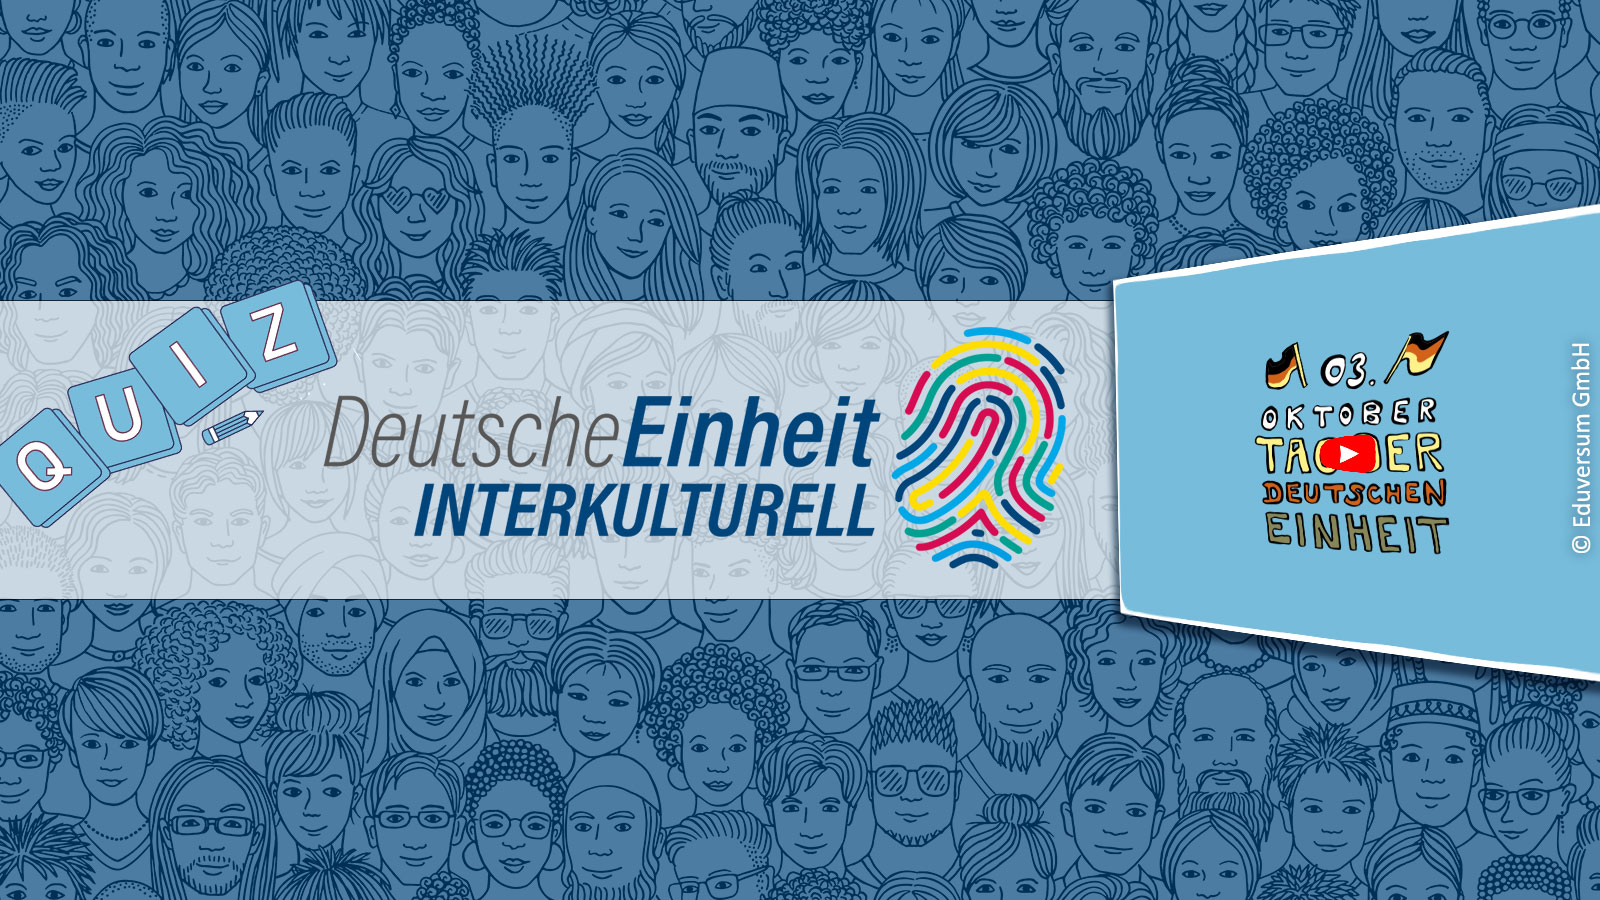 Deutsche Einheit Interkulturell